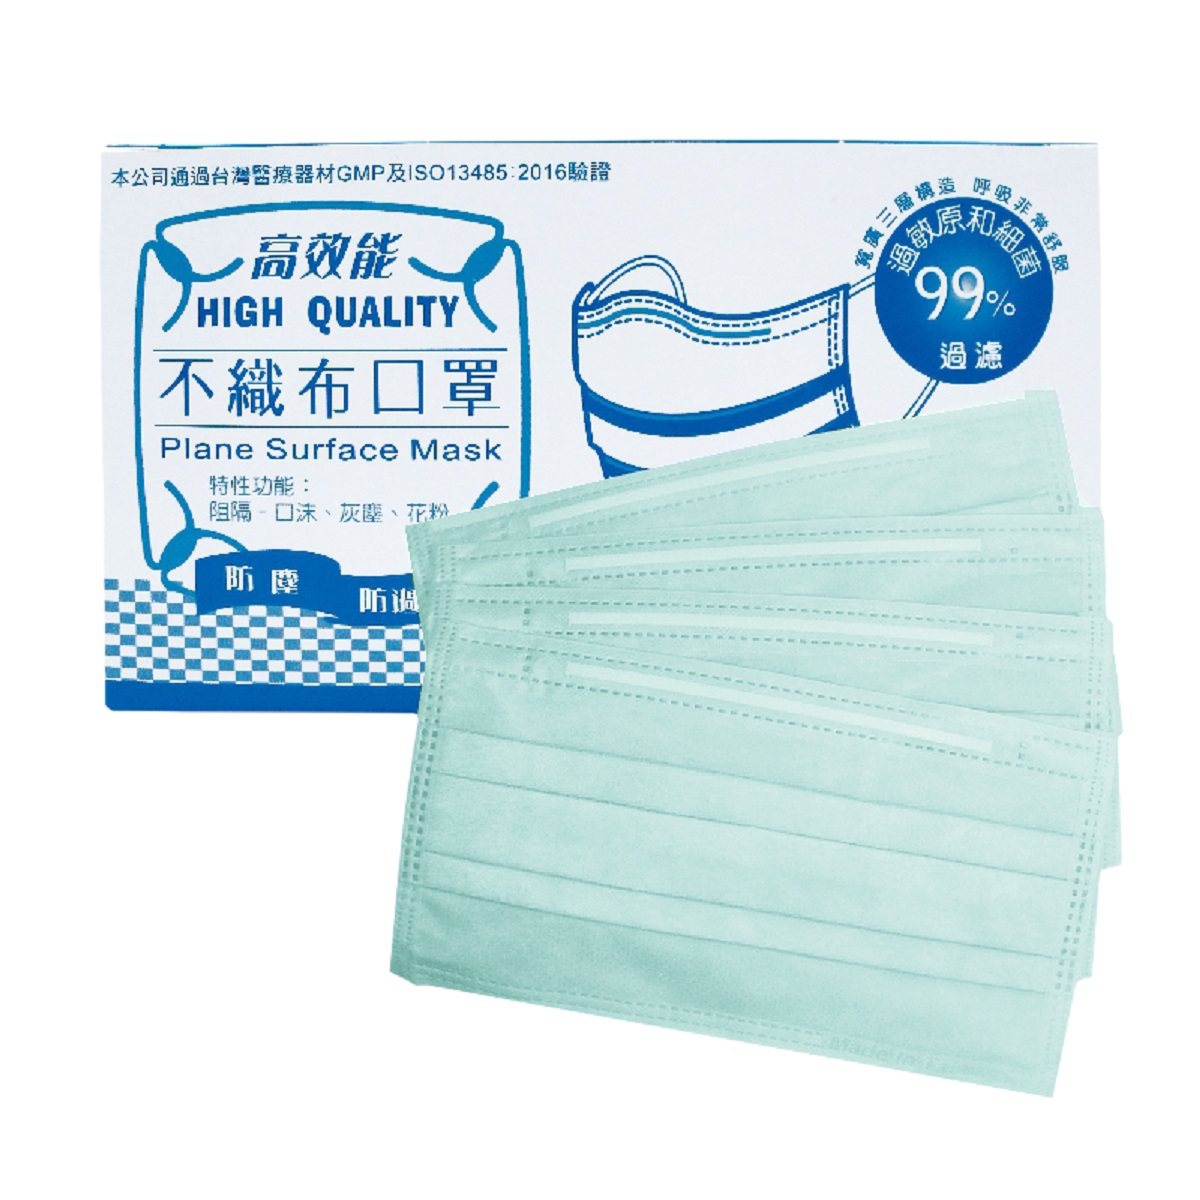 生活市集推出「台灣製威欣利醫療級口罩」，單盒50片裝，共有1盒、2盒、4盒、10盒等4種組數可選購，每人限購一組。圖／生活市集提供